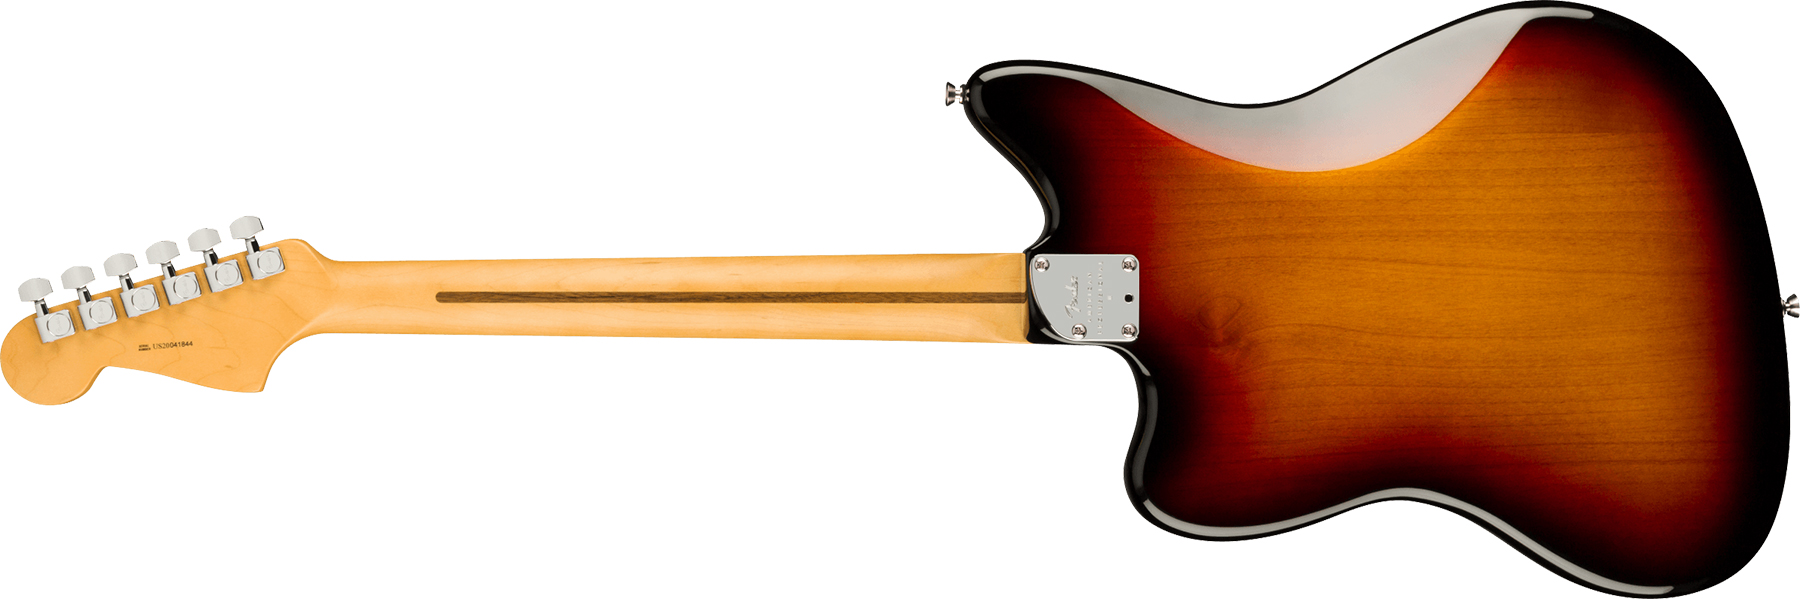 Fender Jazzmaster American Professional Ii Lh Gaucher Usa Rw - 3-color Sunburst - E-Gitarre für Linkshänder - Variation 1